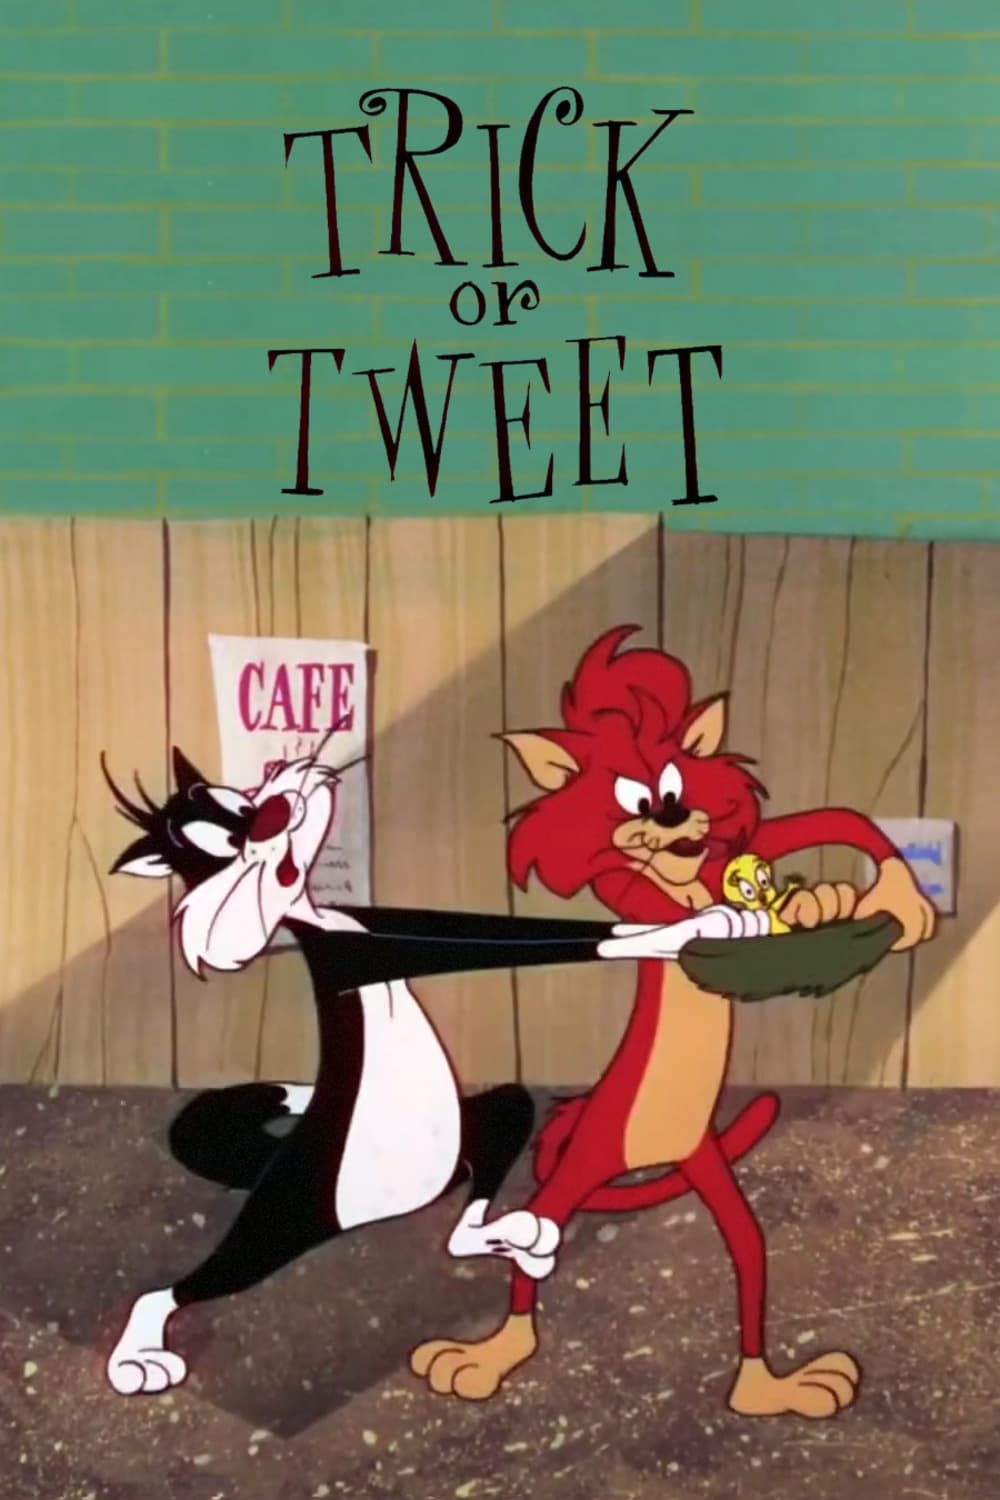 Trick or Tweet (1959)